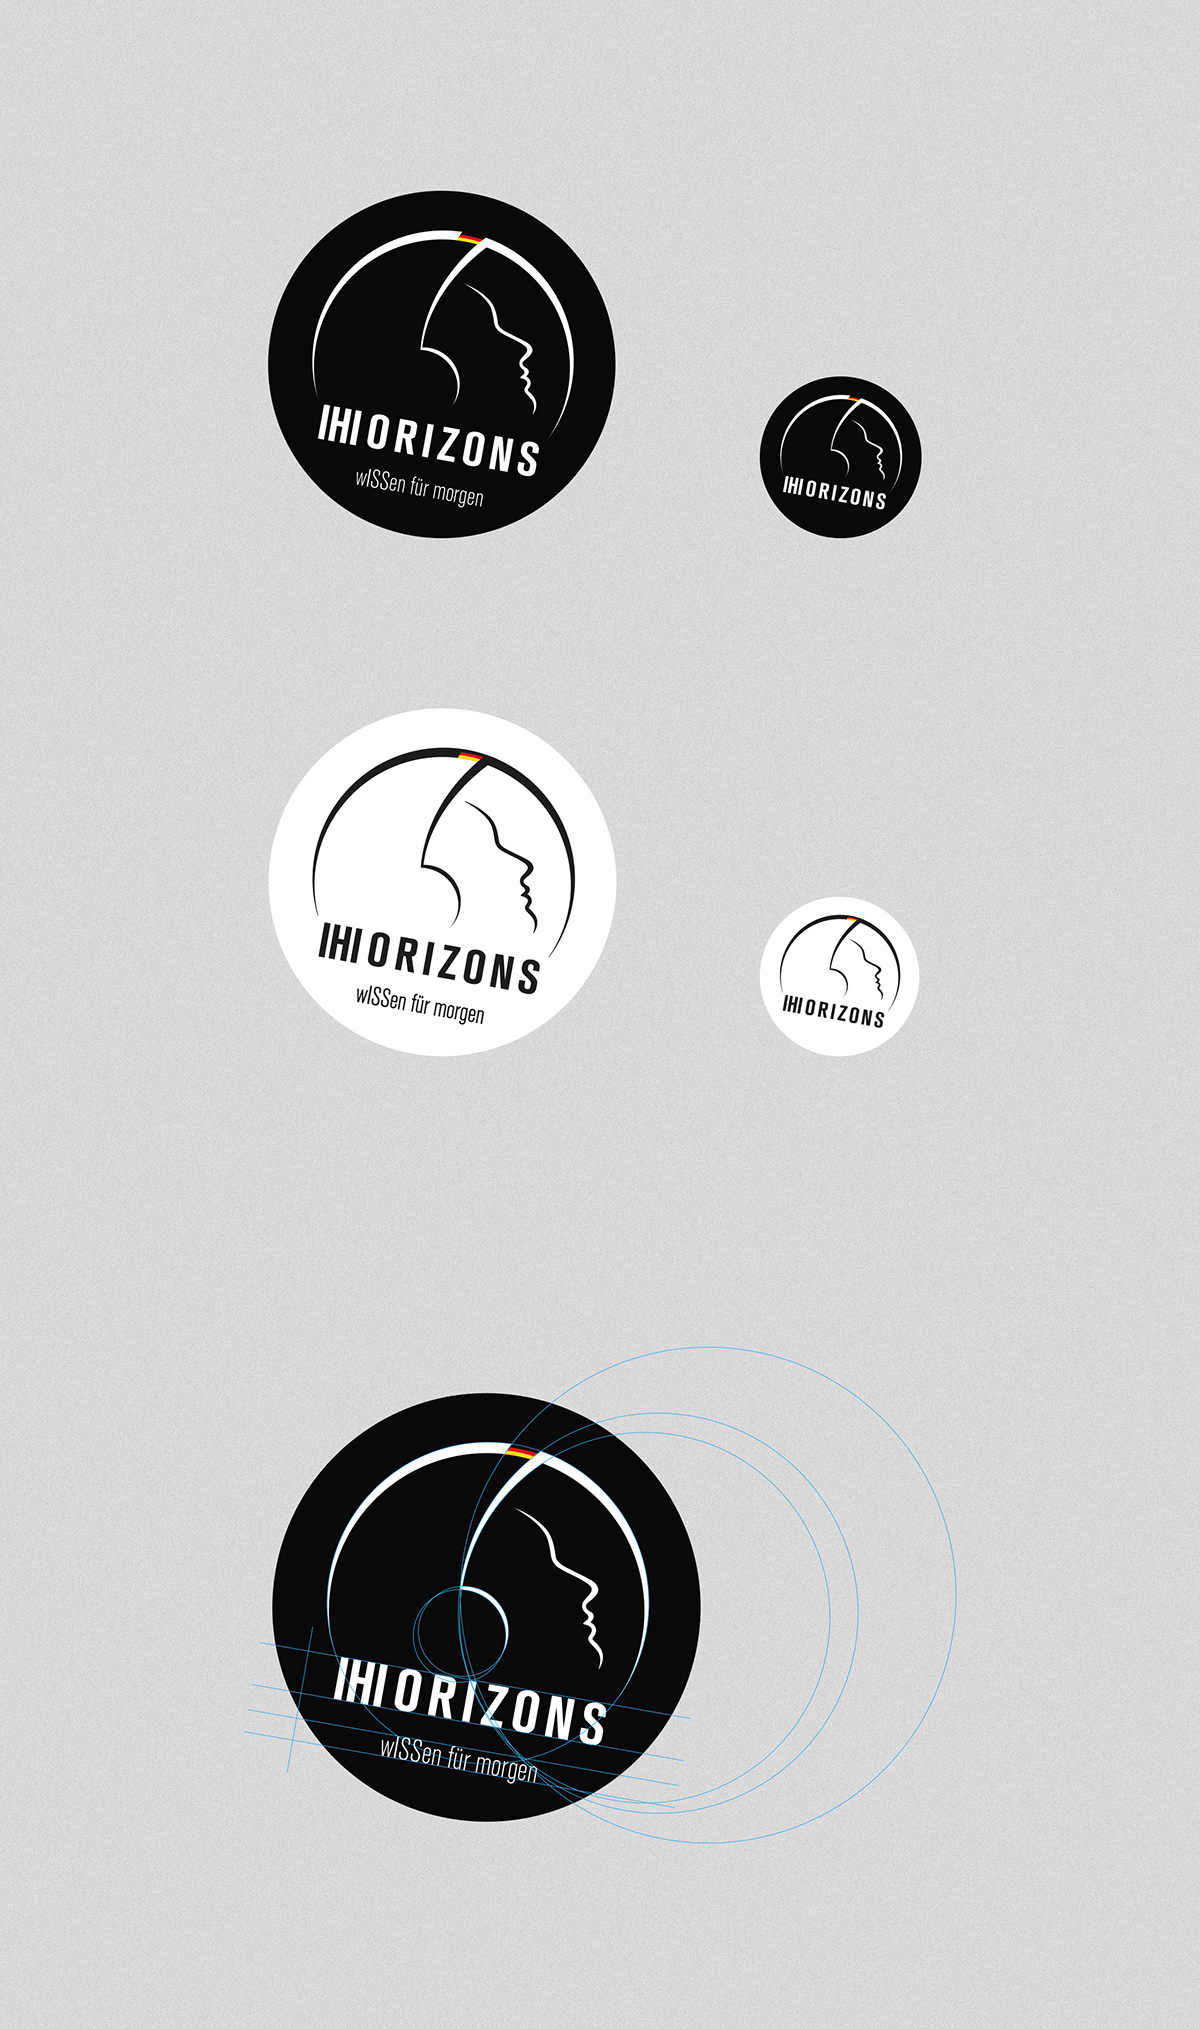 esa iss mission Alexander Gerst Space  Logo Design branding  patch Adobe Portfolio Horizons